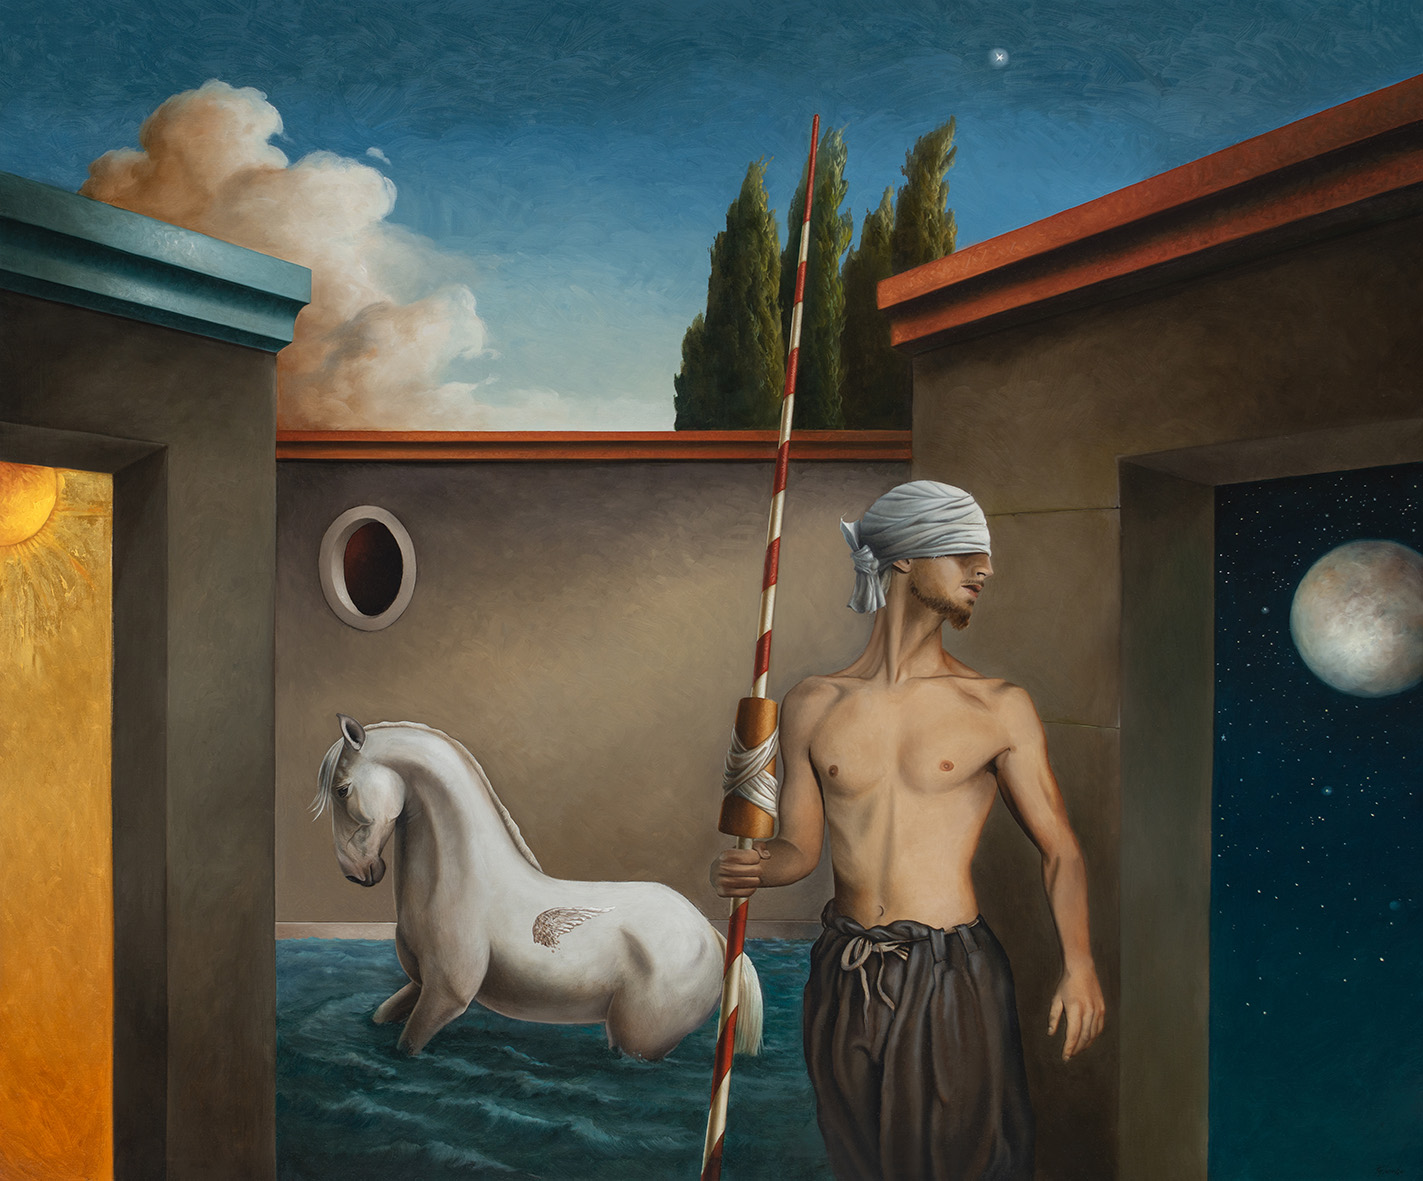 Dipinto: uomo bendato e a petto nudo regge una lancia da cavaliere; dietro, un cavallo con le zampe immerse in acqua